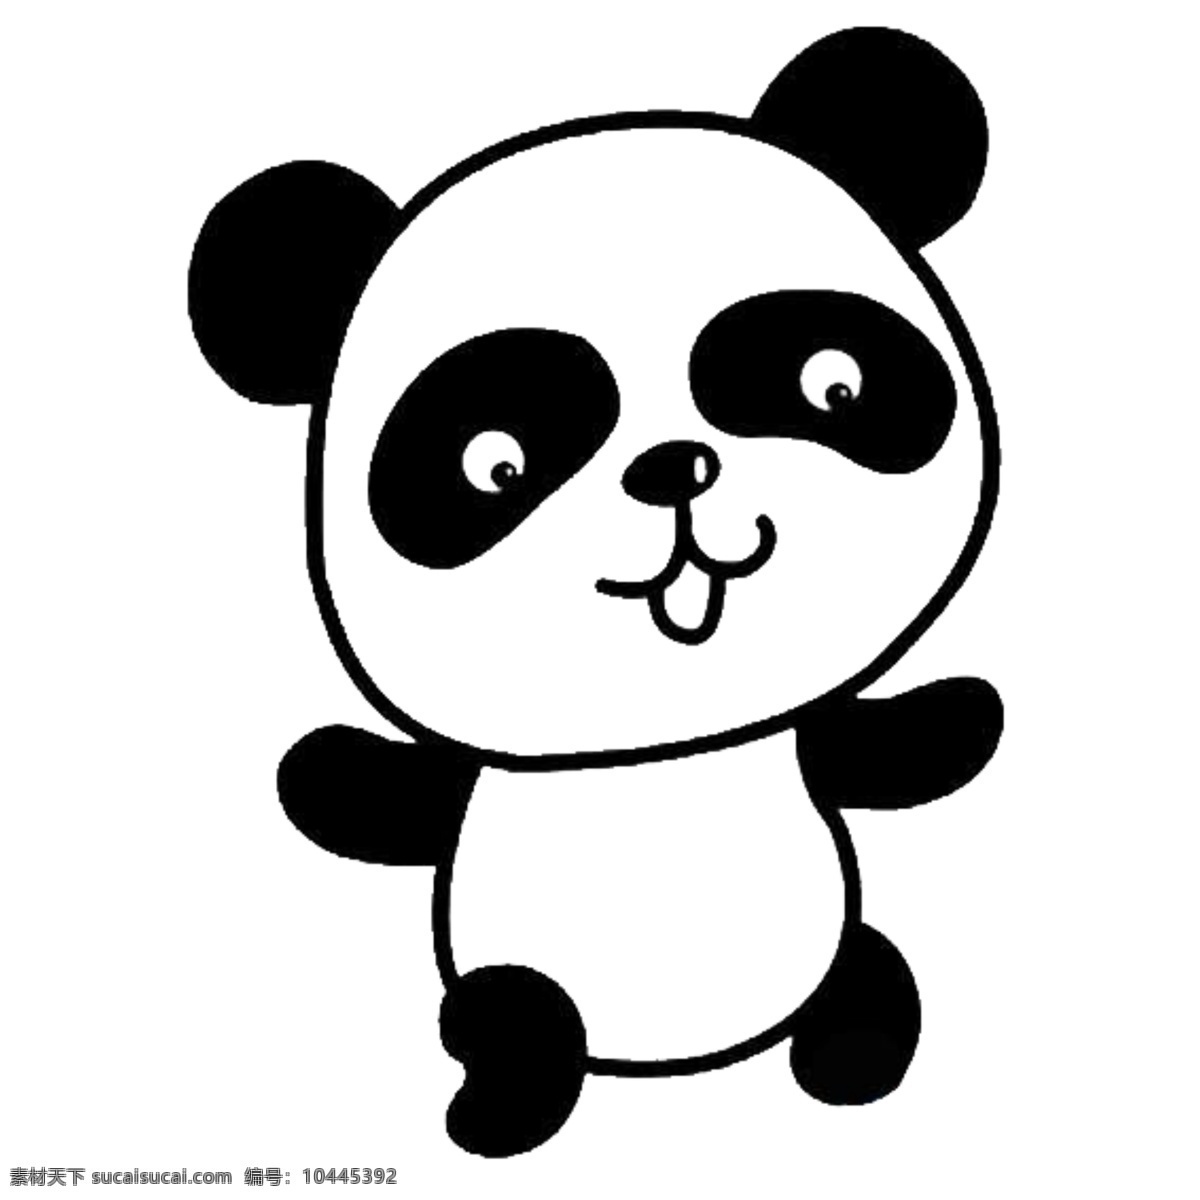 可爱 熊猫 简单 黑白 简笔 黑白色简单 可随意上色 小熊猫 做装饰 图标效果 卡通